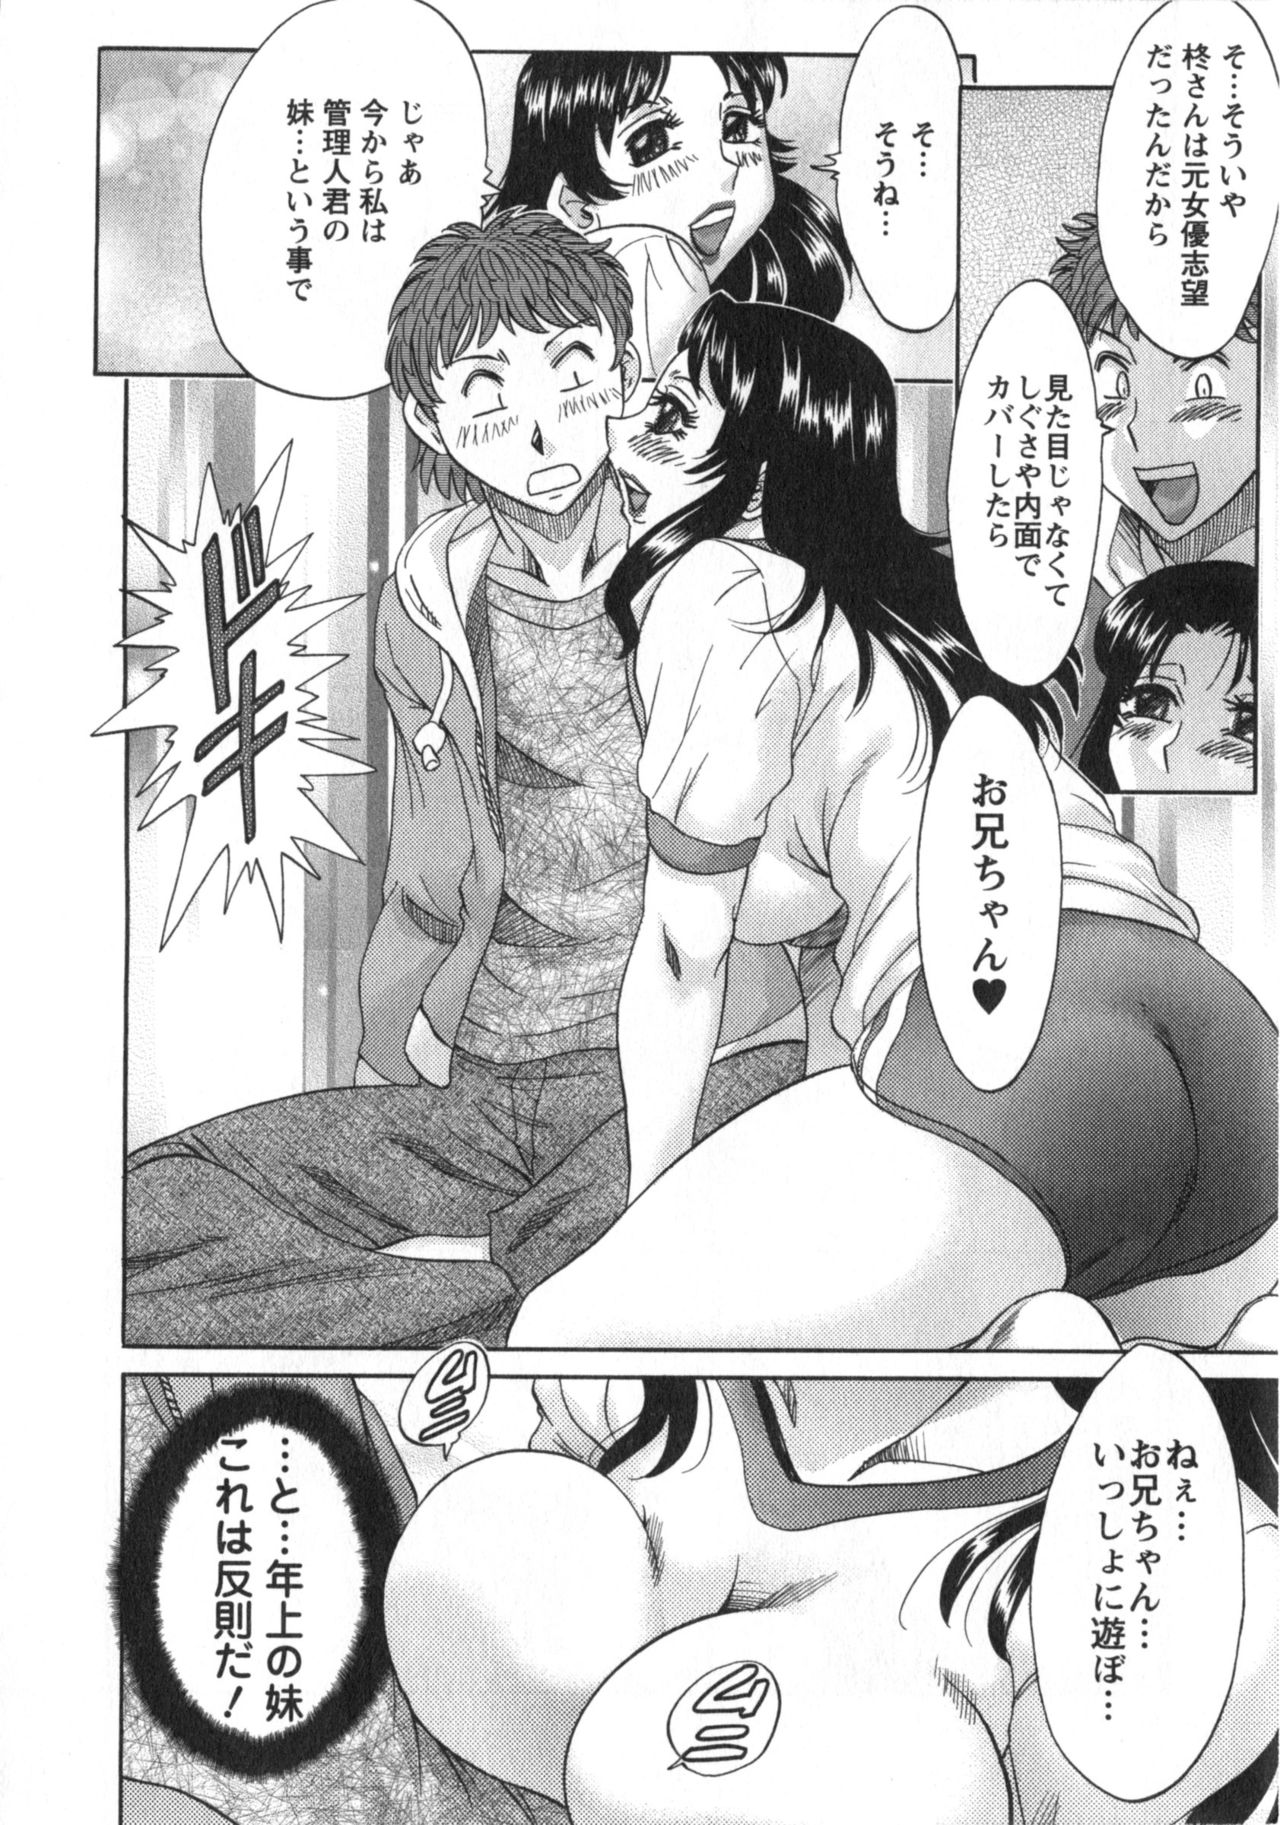 [Chanpon Miyabi] Hitozuma Mansion Kaede vol.2 (End) [ちゃんぽん雅] 人妻マンション楓②